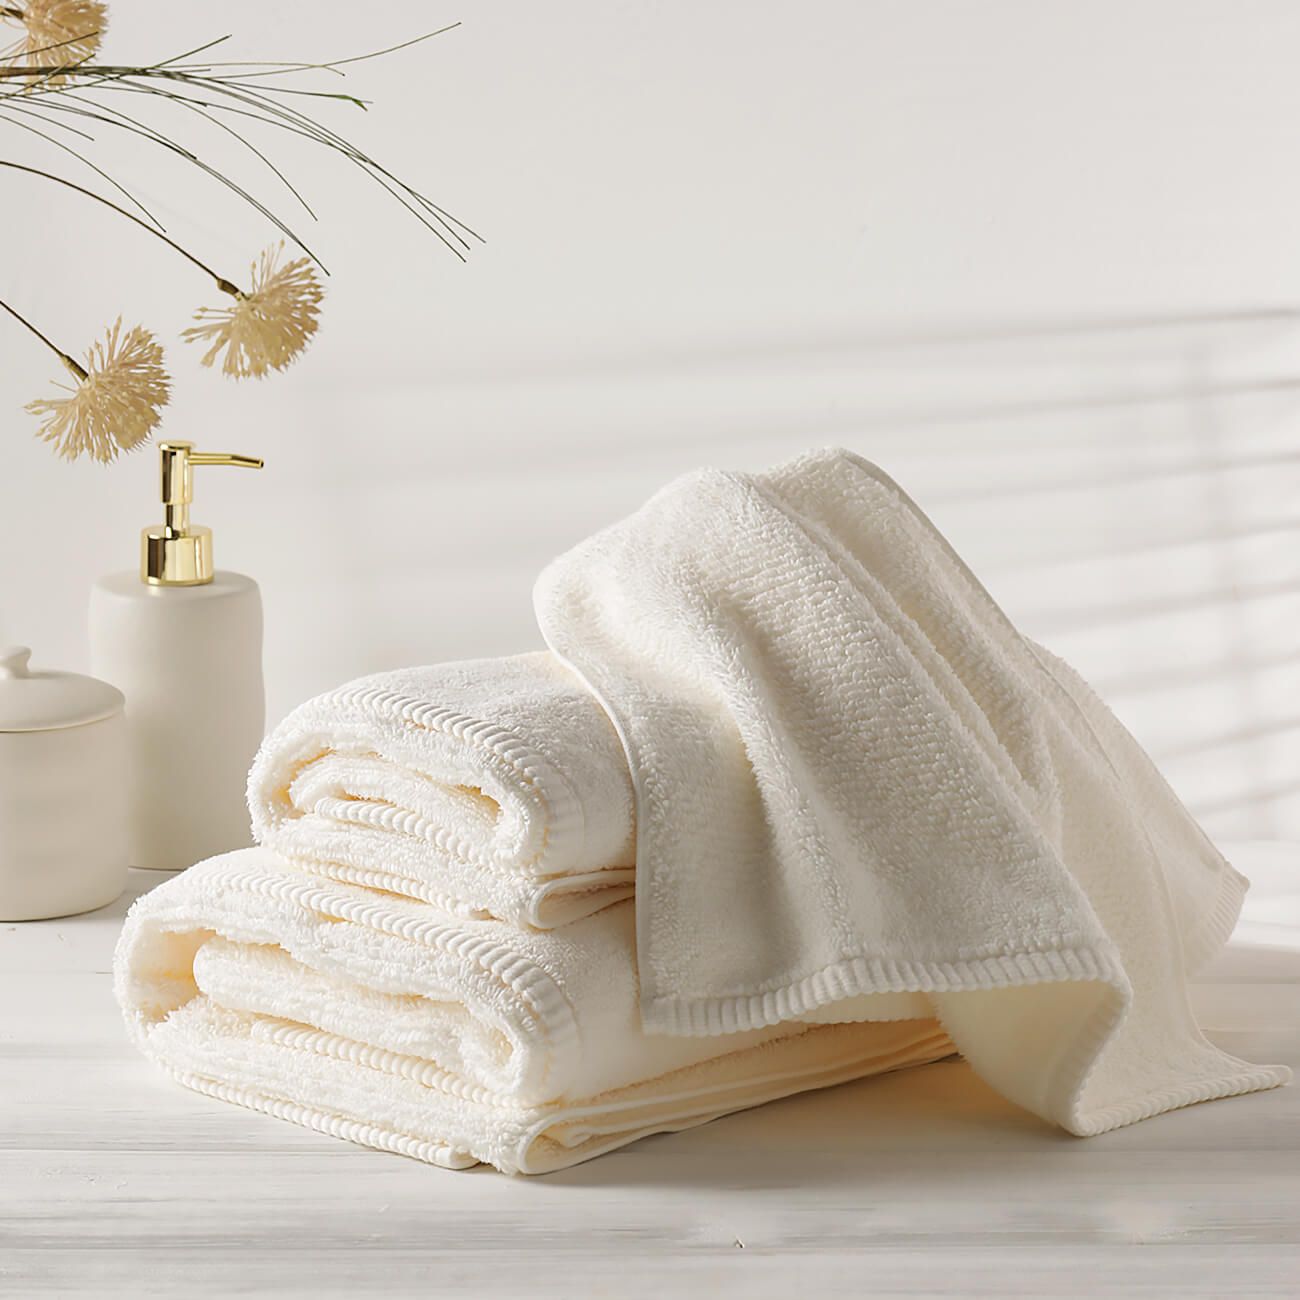 Towel, 40x60 cm, cotton, white, Terry cotton изображение № 1